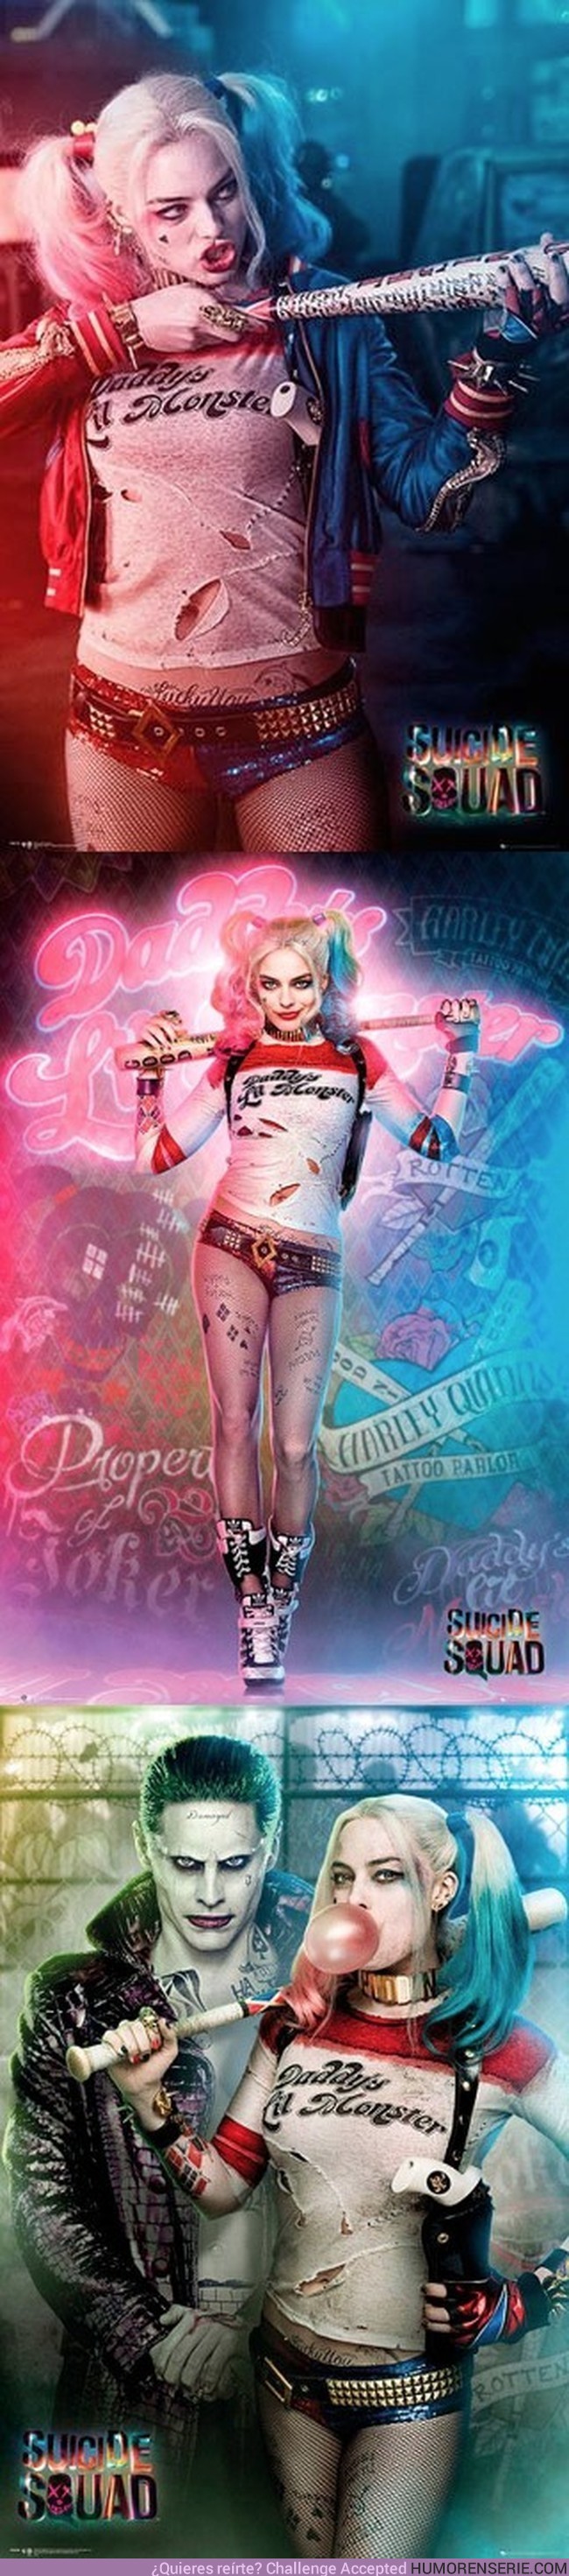 3458 - Nuevos pósters de Harley Quinn. Imposible no enamorarse